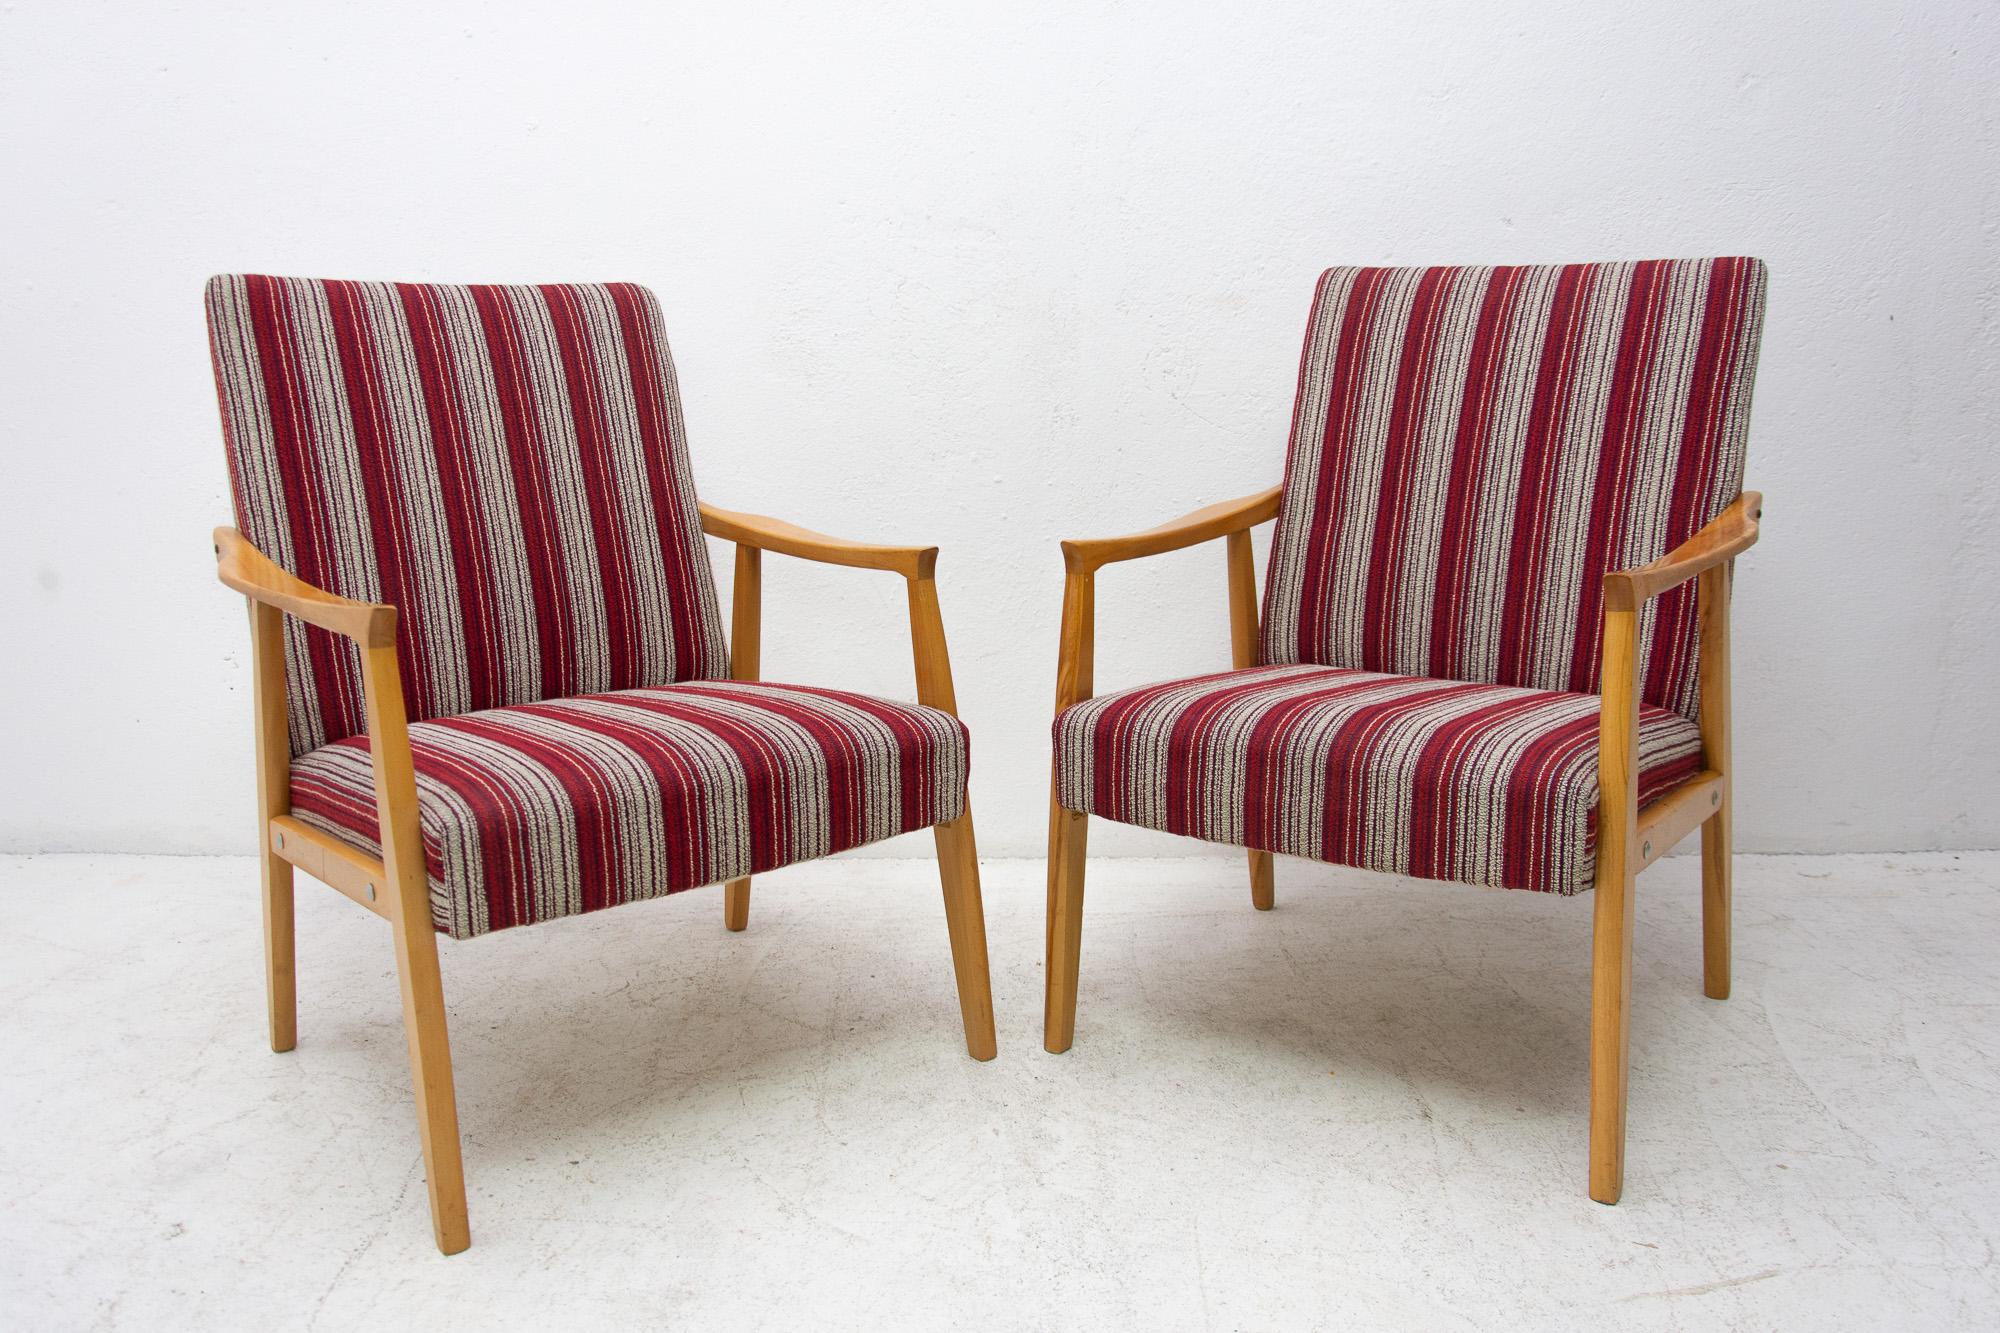 Ein Paar Sessel im dänischen Stil, hergestellt in der ehemaligen Tschechoslowakei in den 1960er Jahren. Die Struktur ist aus Buchenholz und die Stühle sind original gepolstert. Die Stühle sind in gutem Vintage-Zustand, zeigen leichte Alters- und